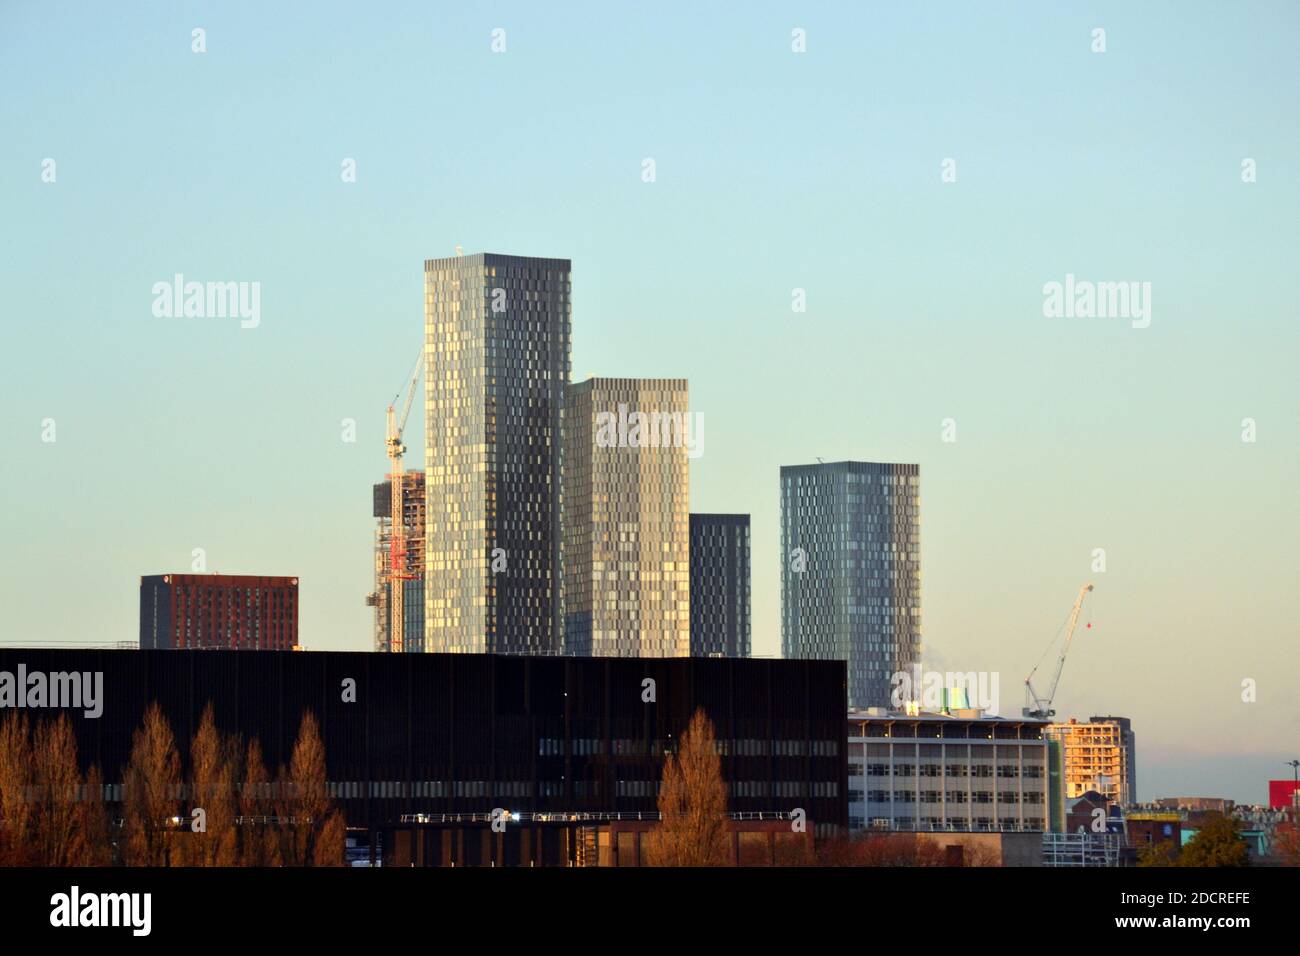 Hochhäuser am Deansgate Square, einem Wolkenkratzer-Gebäude im Stadtzentrum von Manchester, England, Großbritannien, vor einem blauen Himmel, Kopierraum Stockfoto